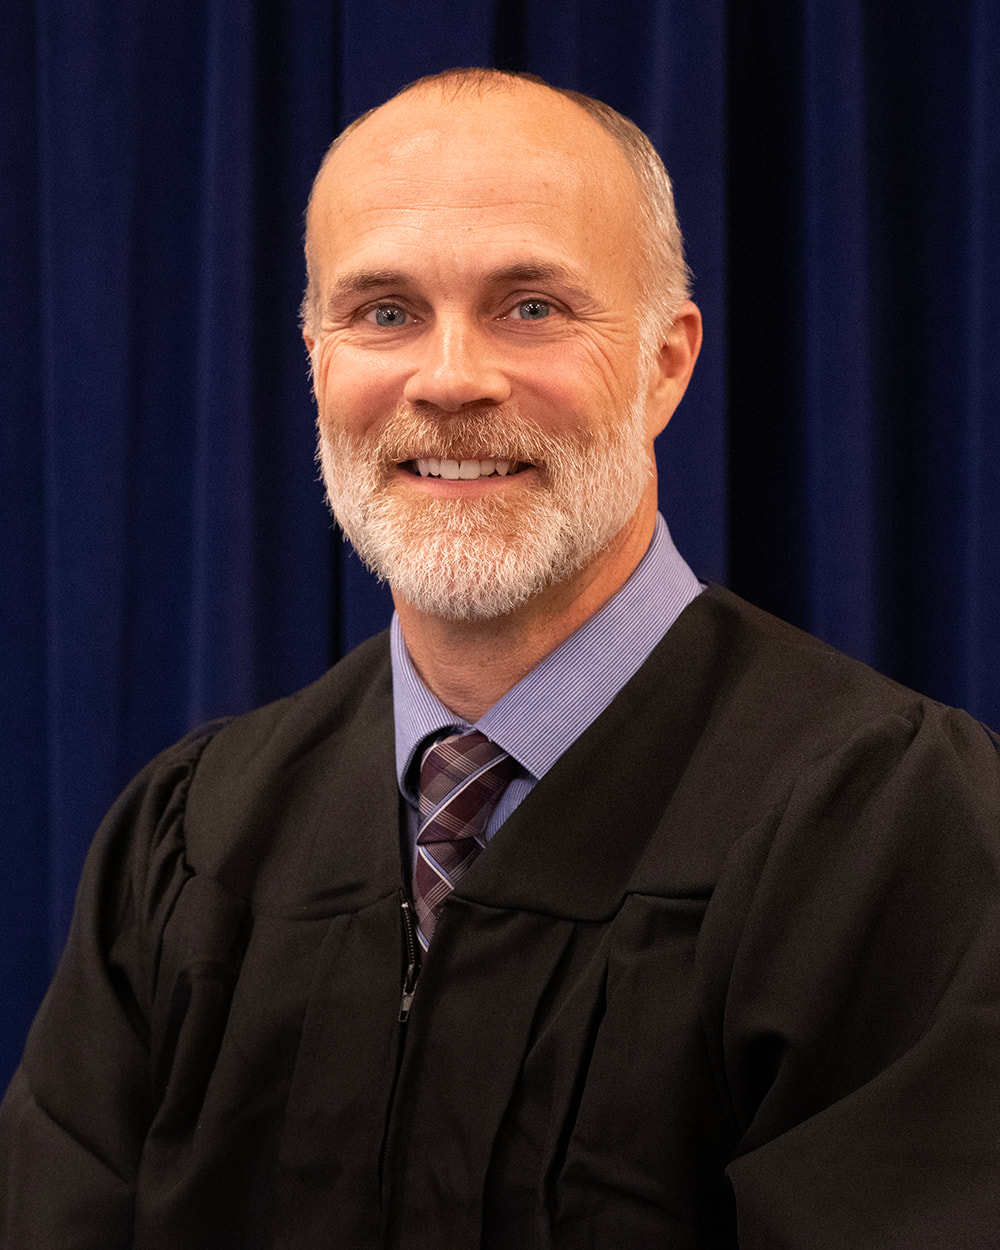 Judge Jacob Estes